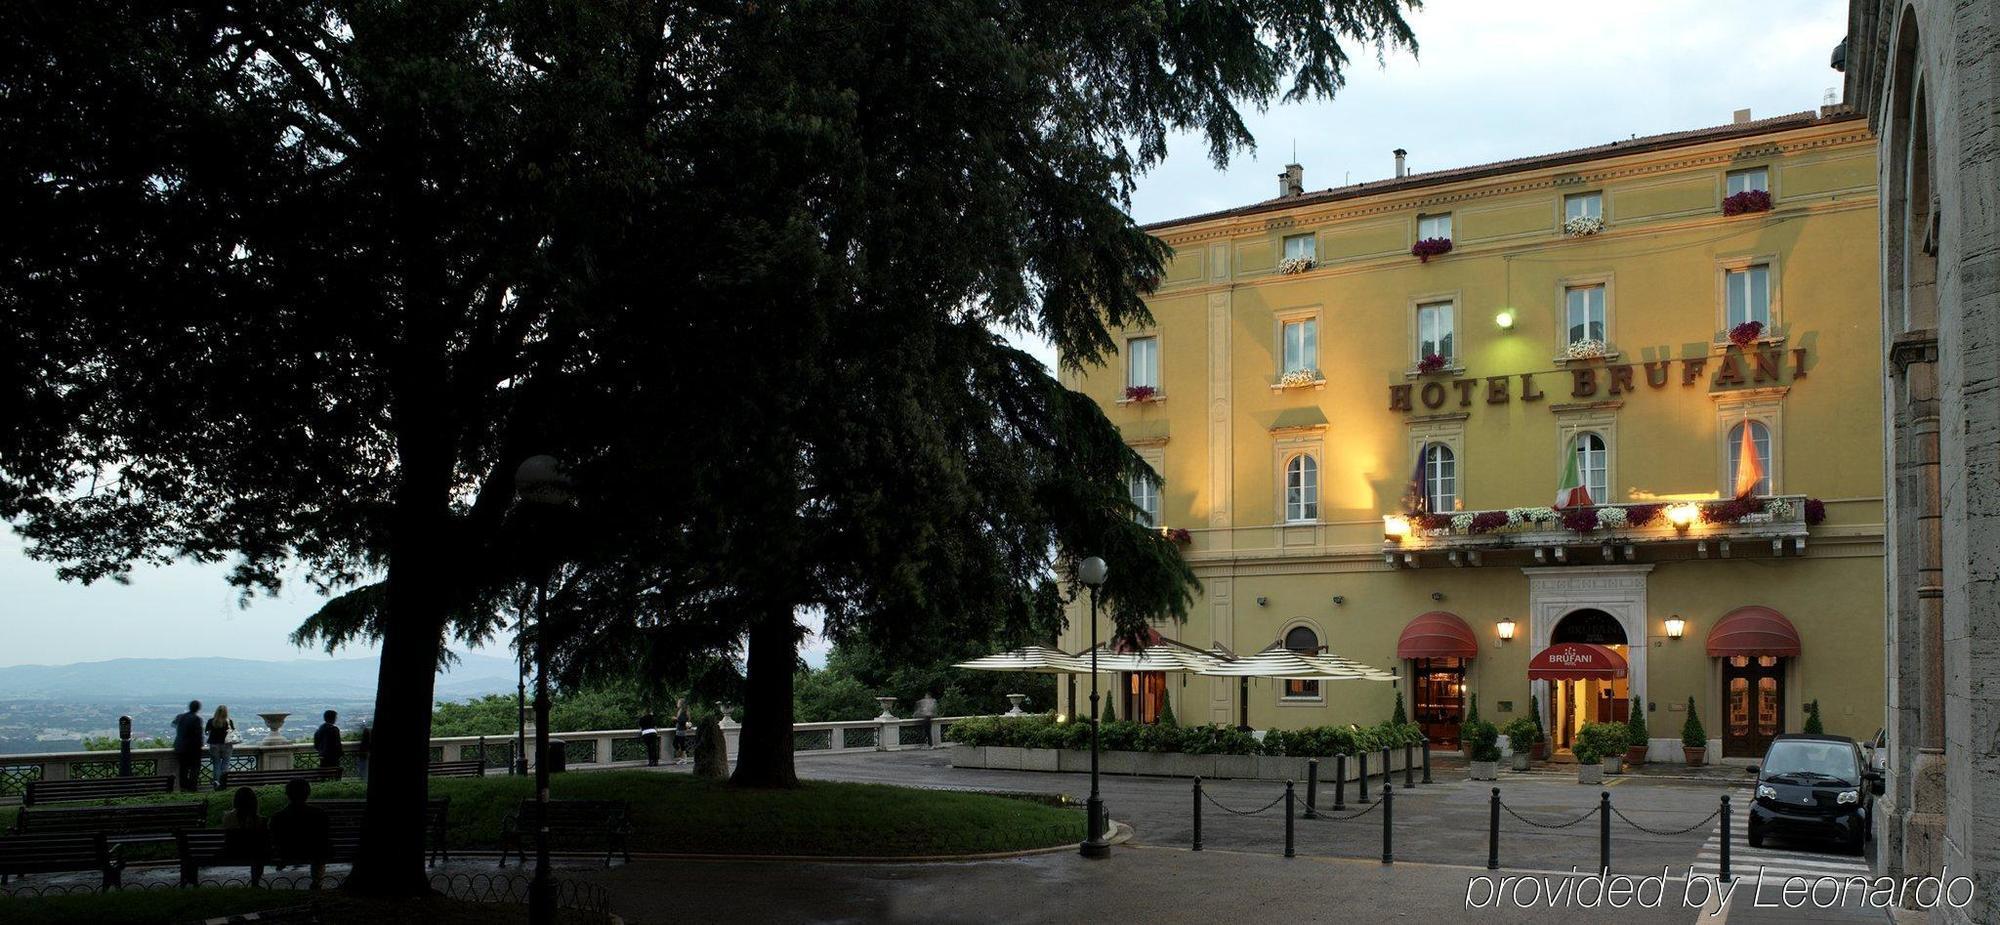 Sina Brufani Hotel Perugia Ngoại thất bức ảnh